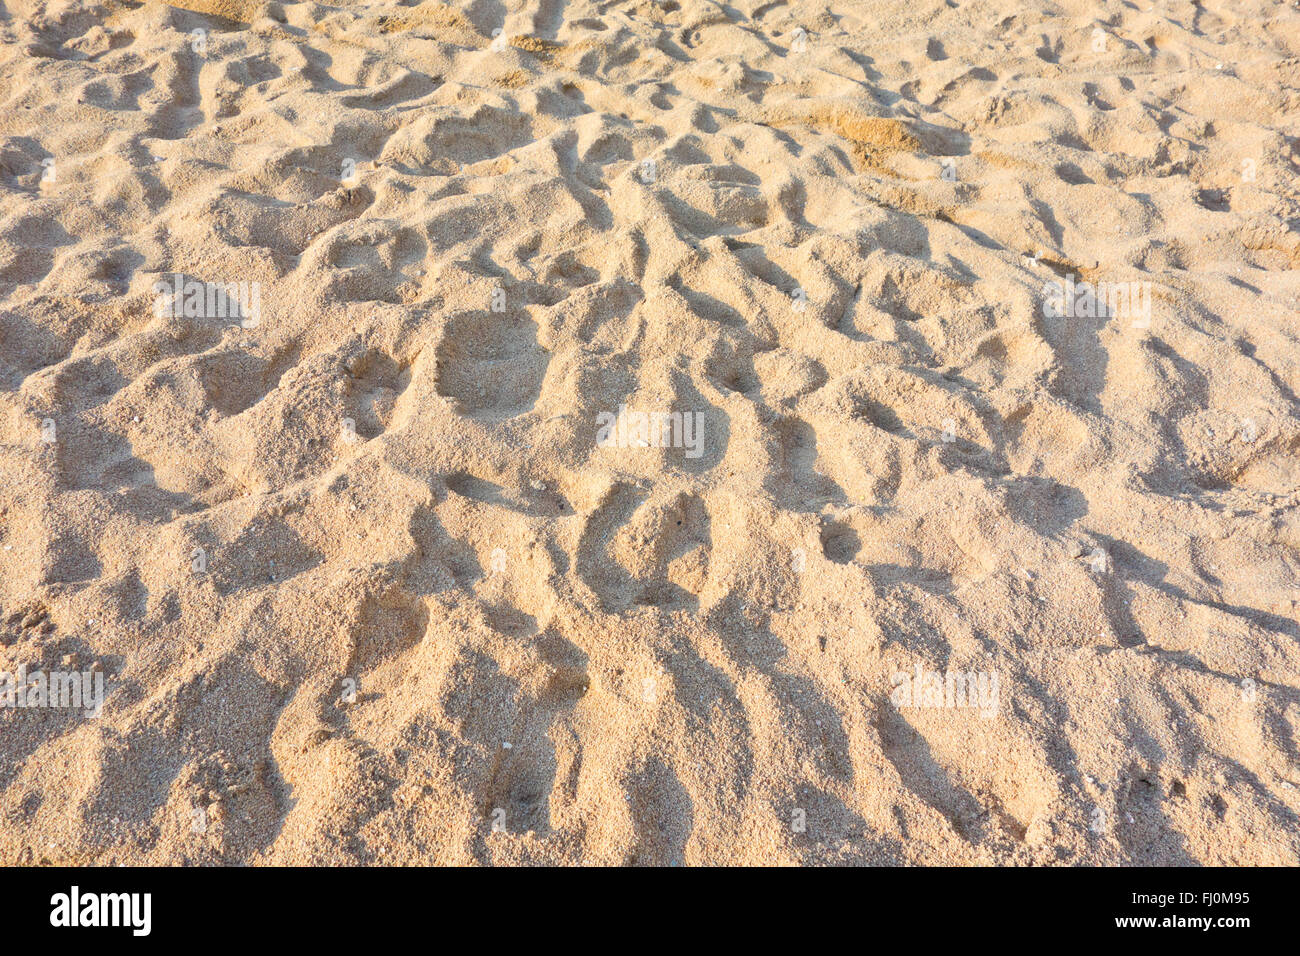 Une image de la plage de sable Banque D'Images